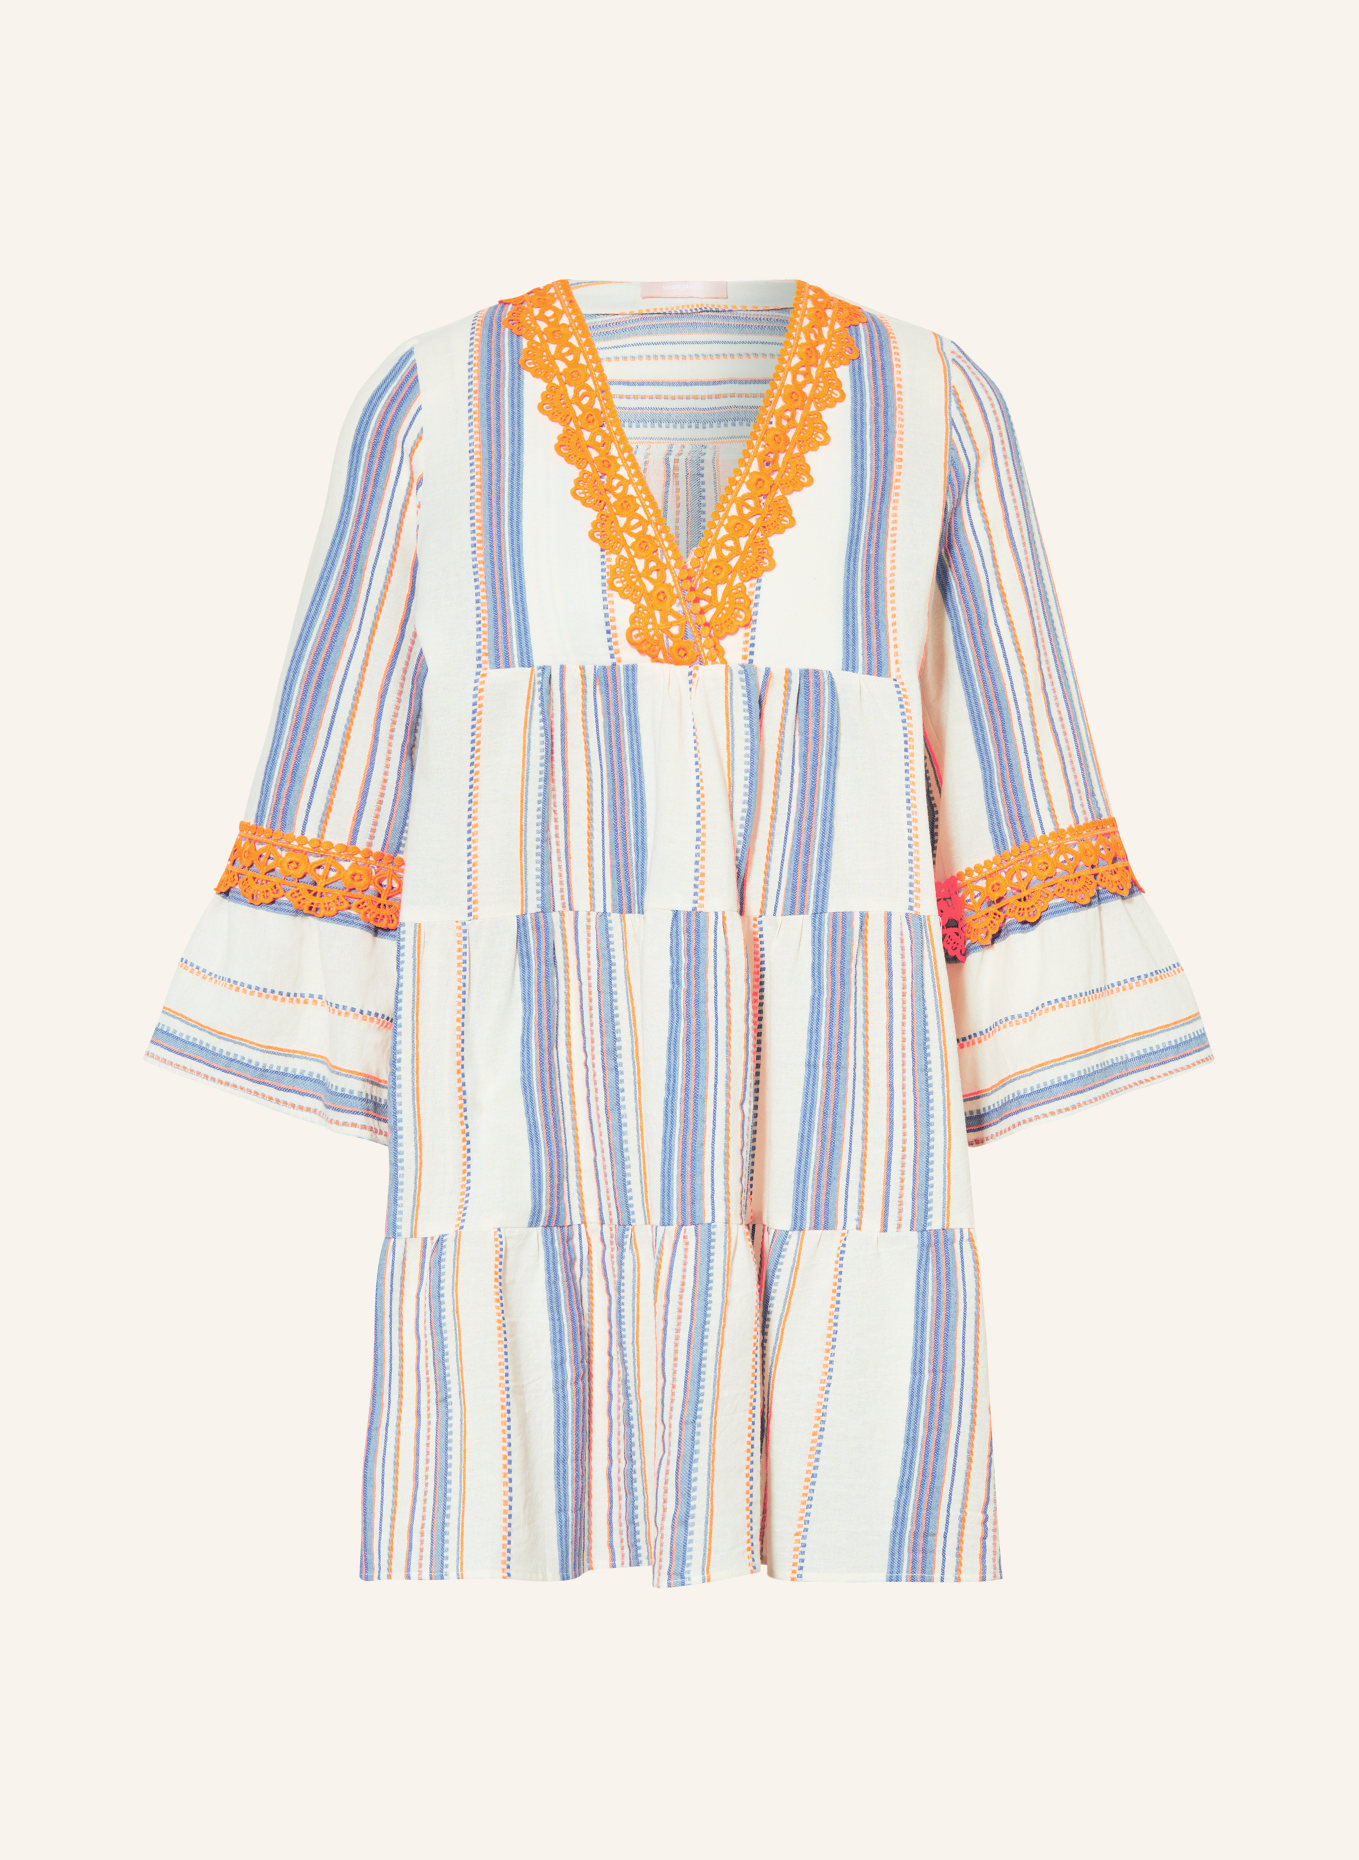 VALÉRIE KHALFON Kleid NIGGY mit 3/4-Arm und Spitze, Farbe: BLAU/ ORANGE/ CREME (Bild 1)